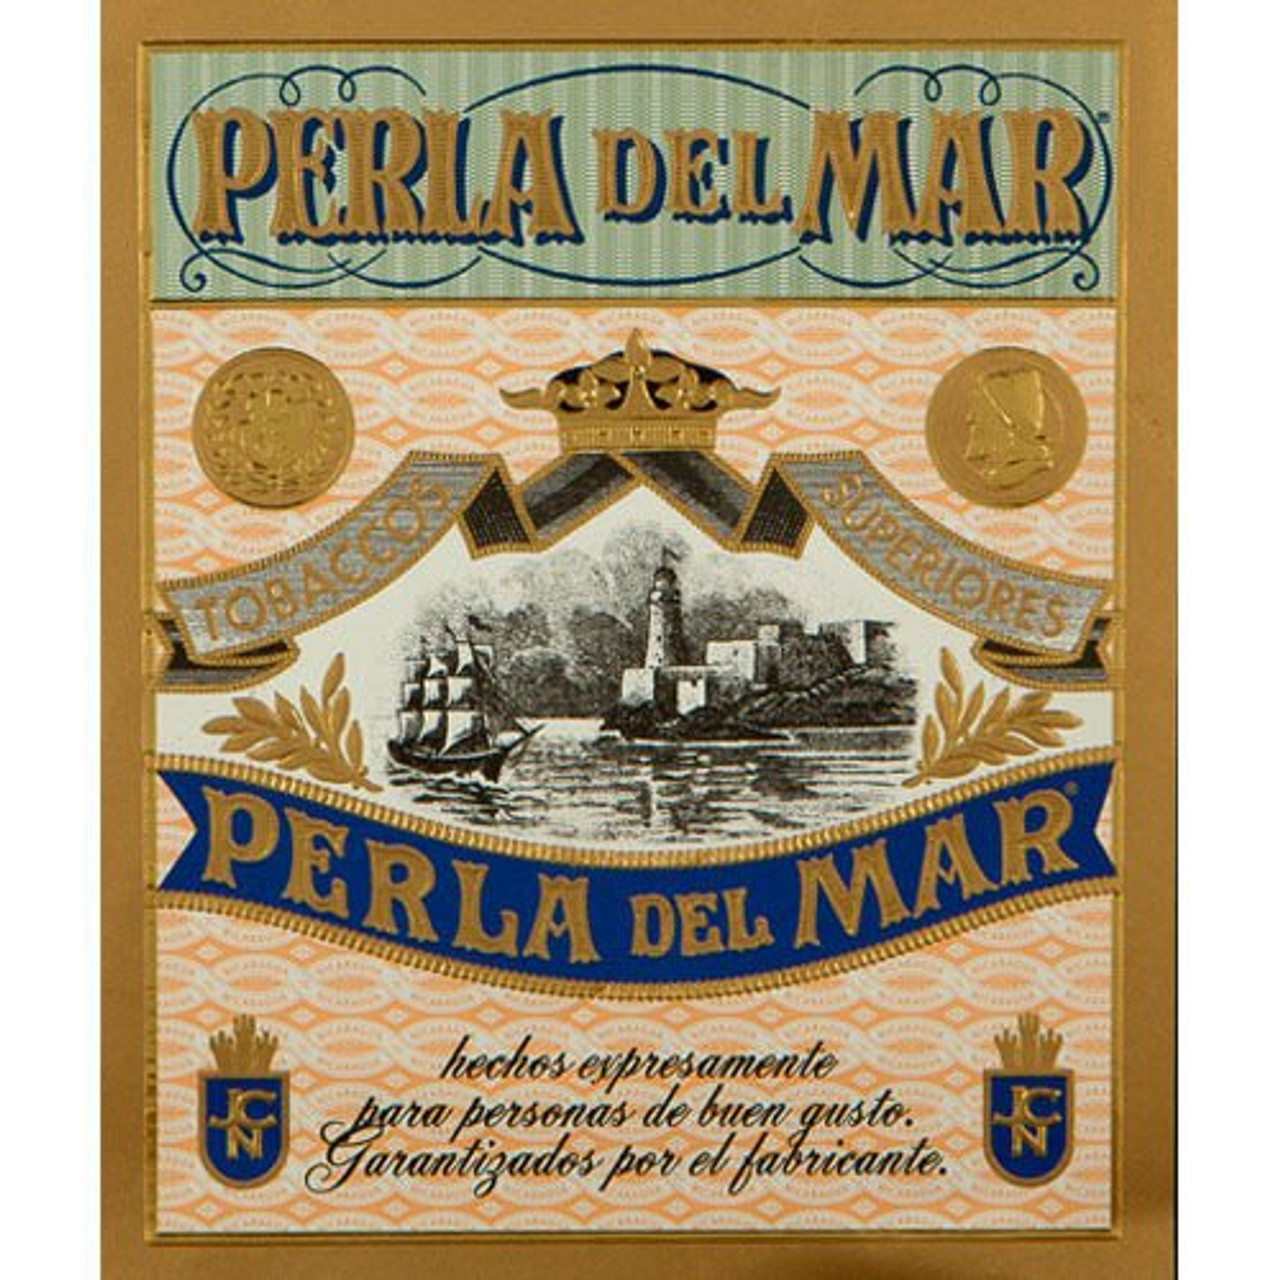 Perla del Mar TG Cigars - 6 x 60 (Box of 25)